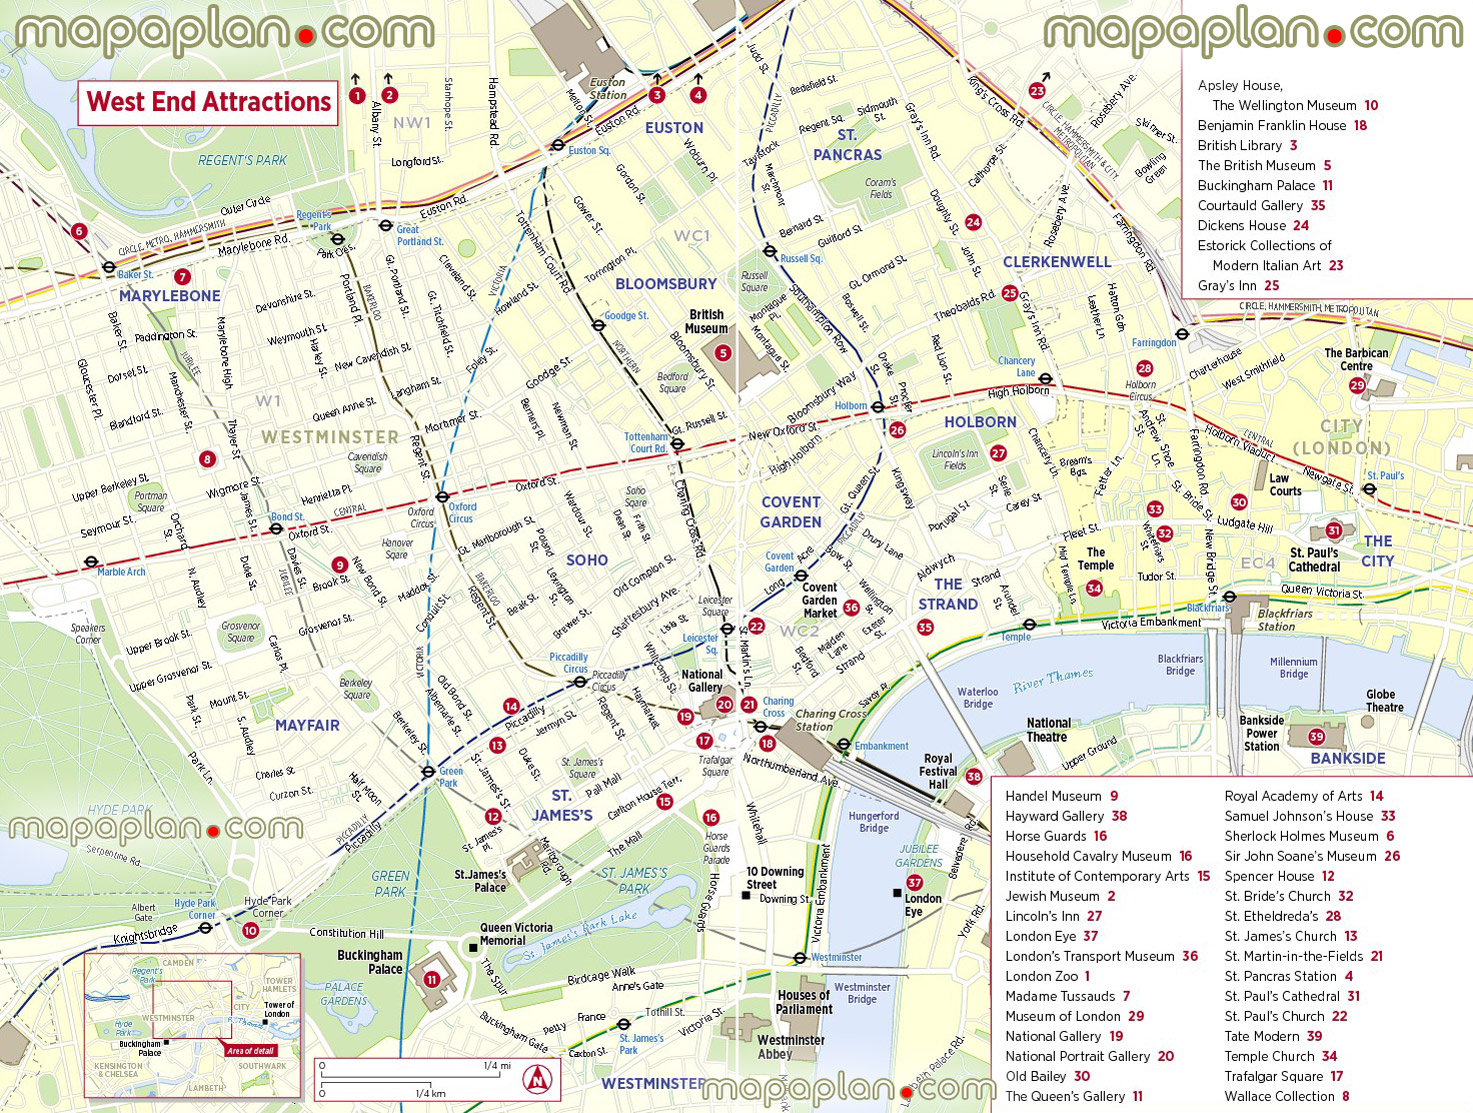 explore famous west end sitess London Top tourist attractions map